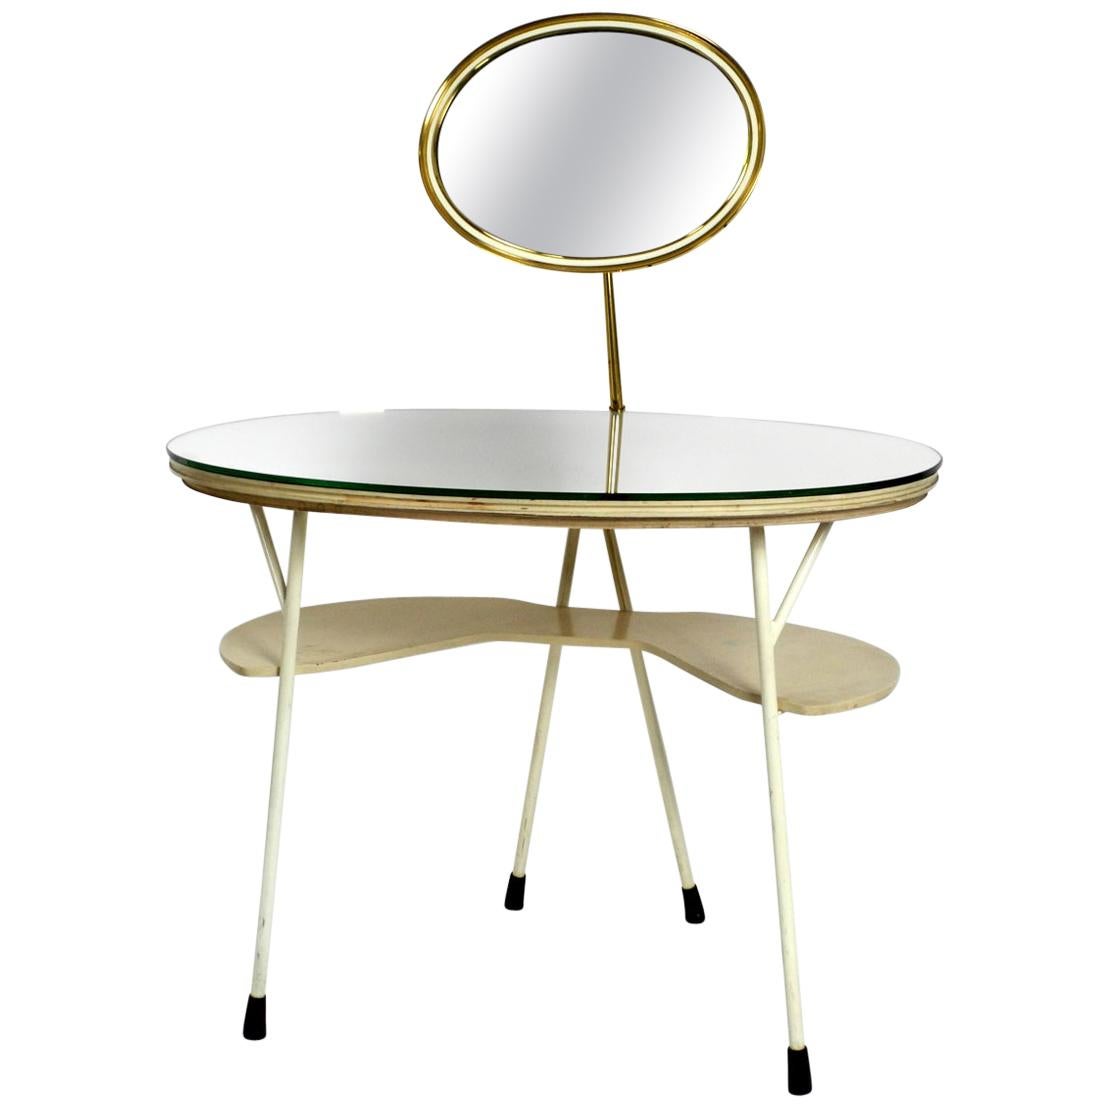 Mid-Century Modern Make Up Mirror Dressing Table from the Vereinigte Werkstätten